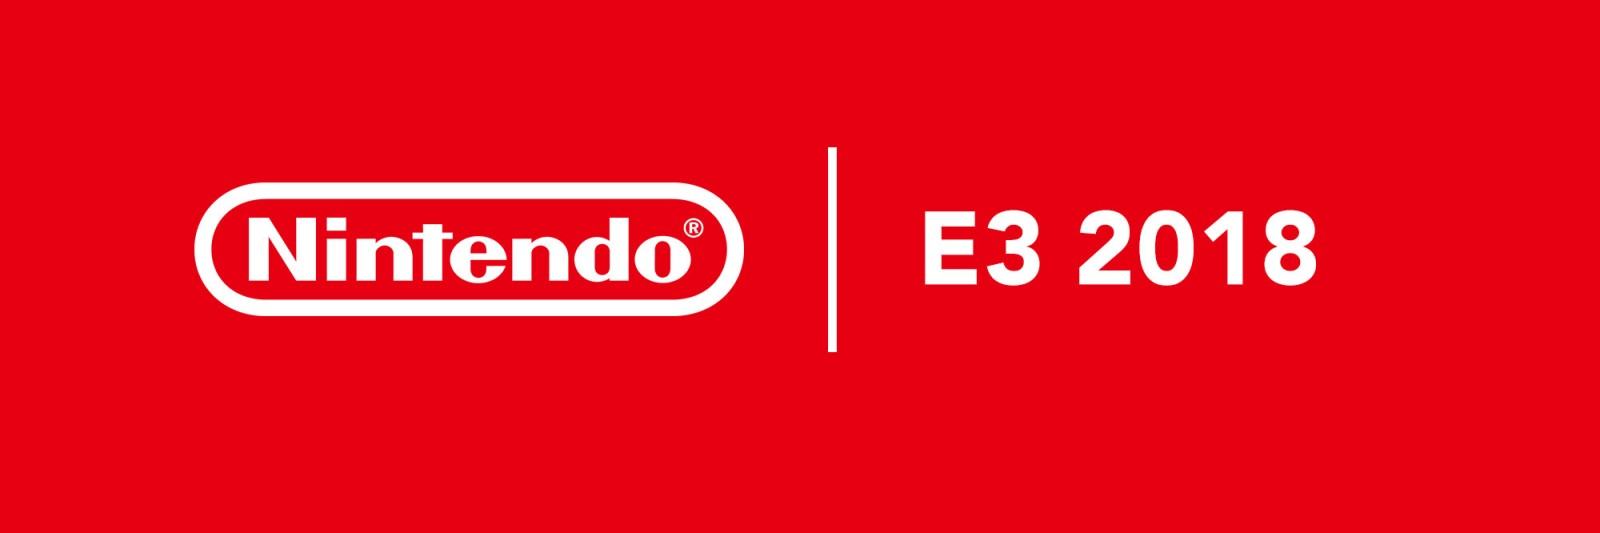 Nintendo Direct E3 2018 annunci nuovi giochi in uscita su switch